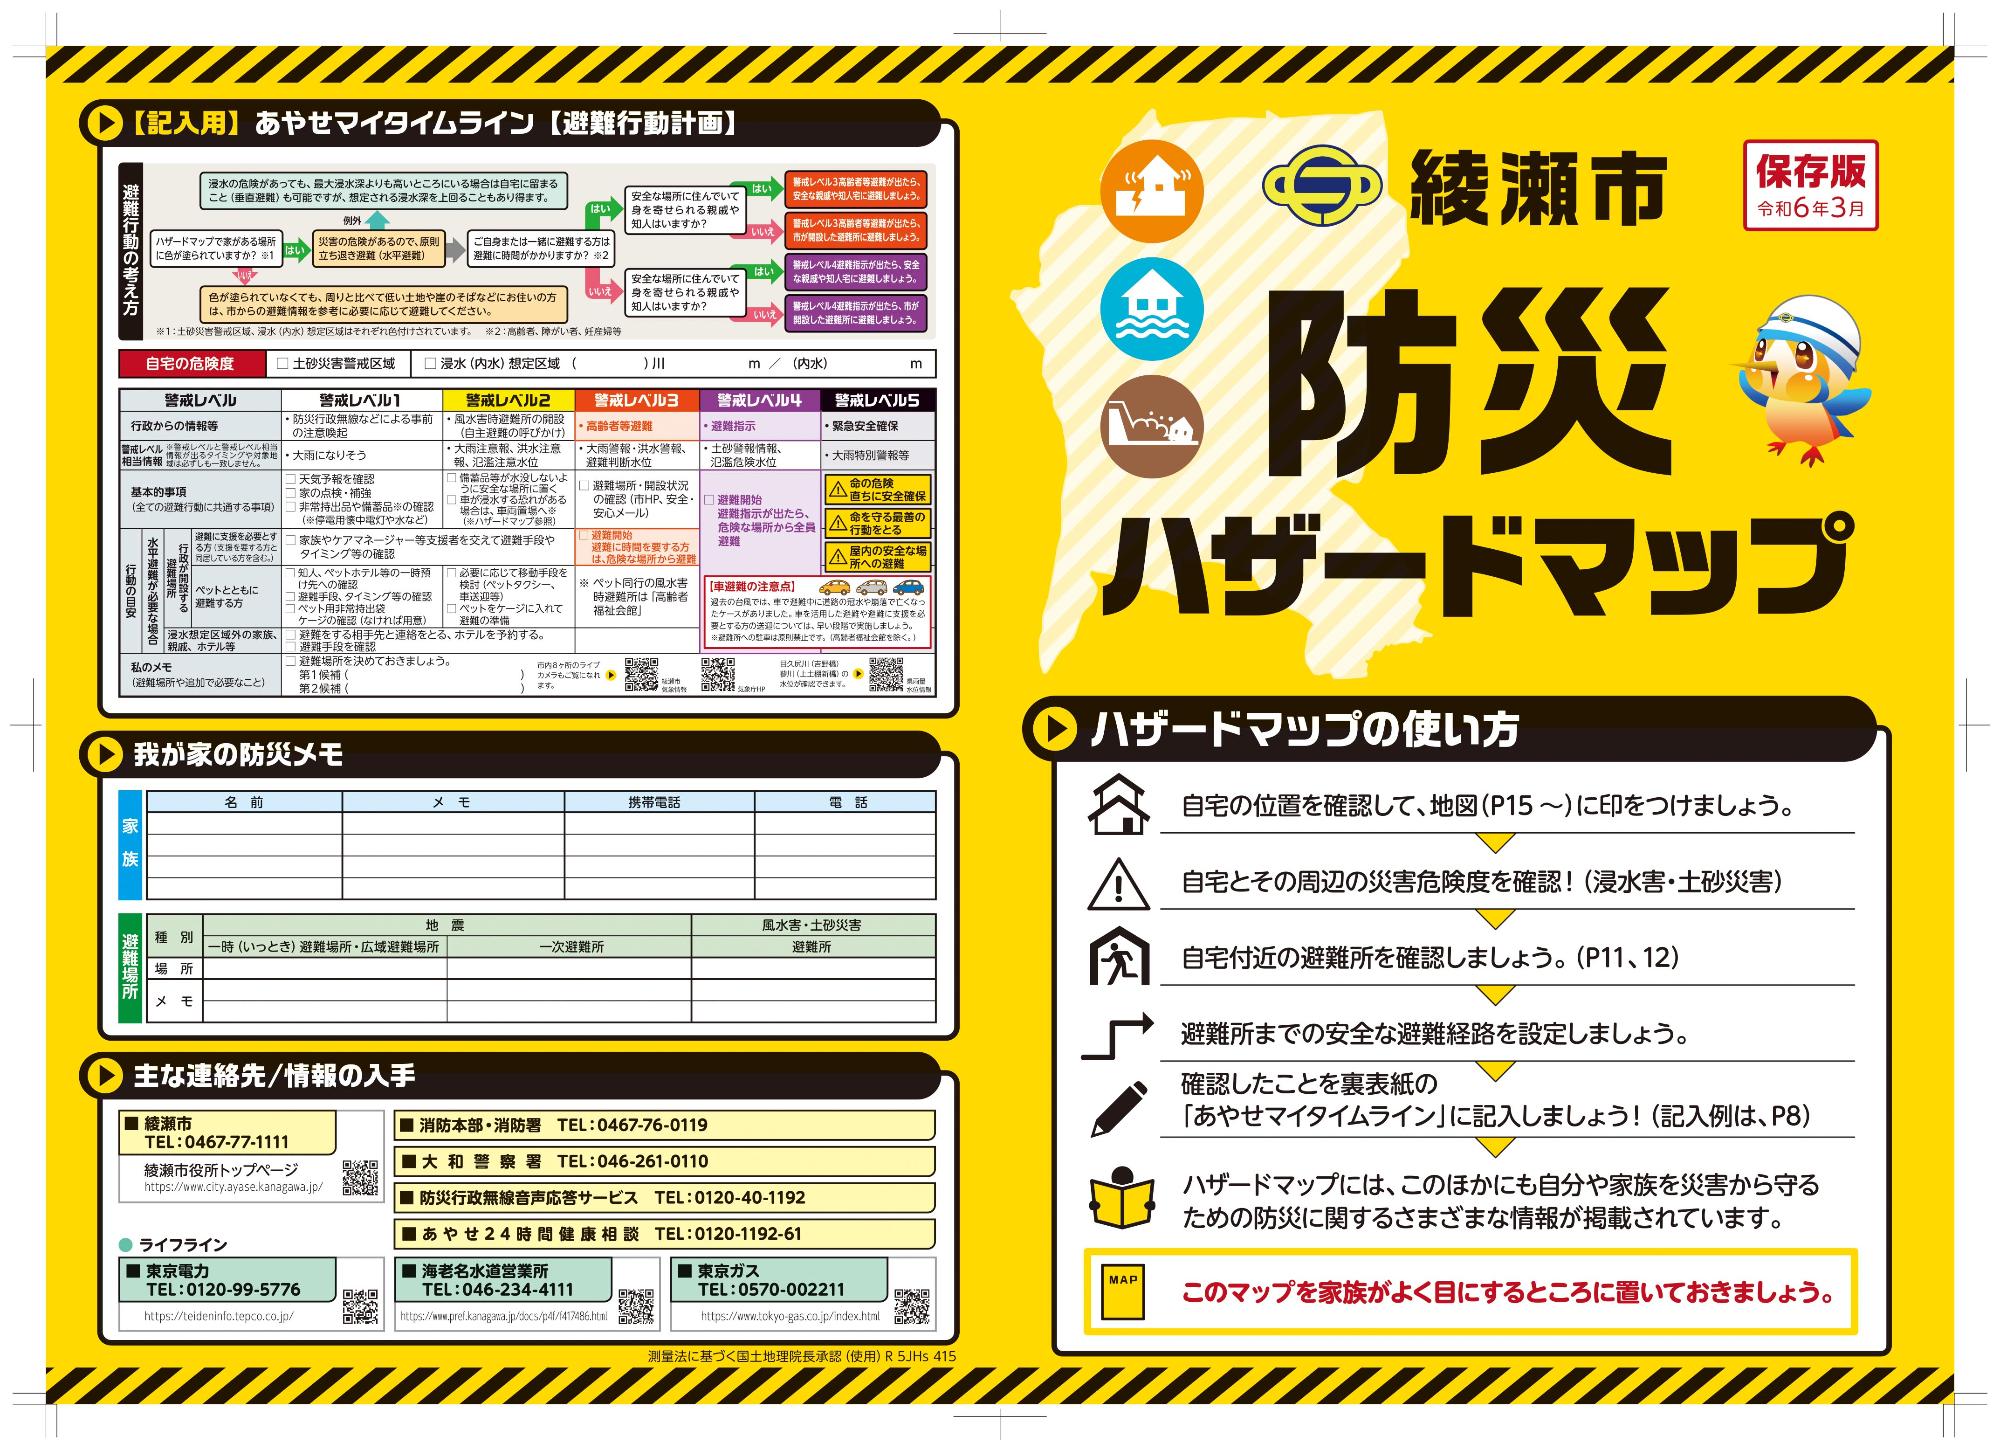 綾瀬市防災ハザードマップの表紙、裏表紙